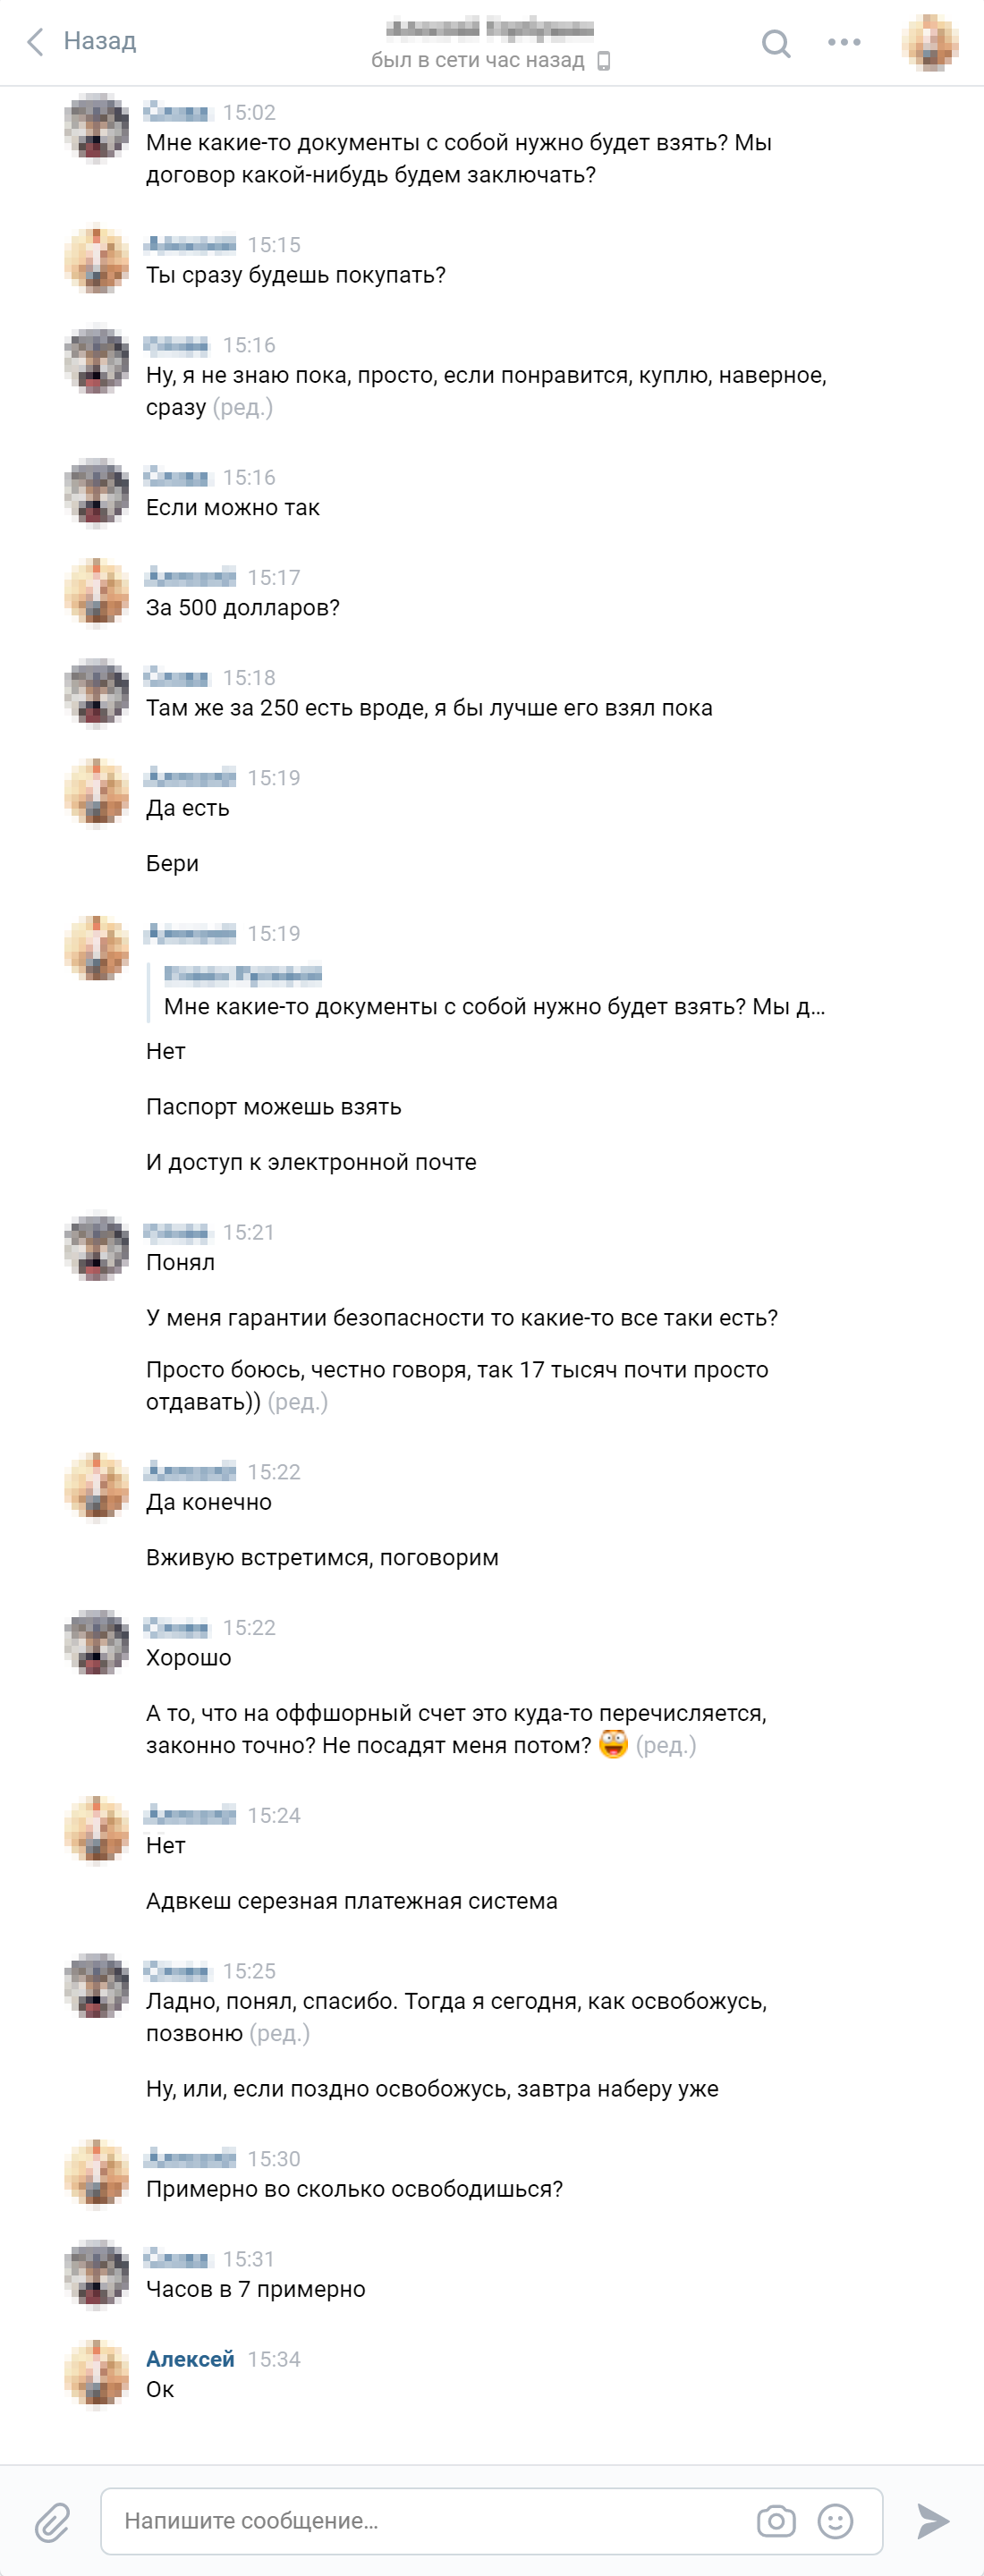 Переписка с представителем компании Алексеем во Вконтакте. Договора не будет, но можно принести деньги и паспорт. Мм, соблазнительно